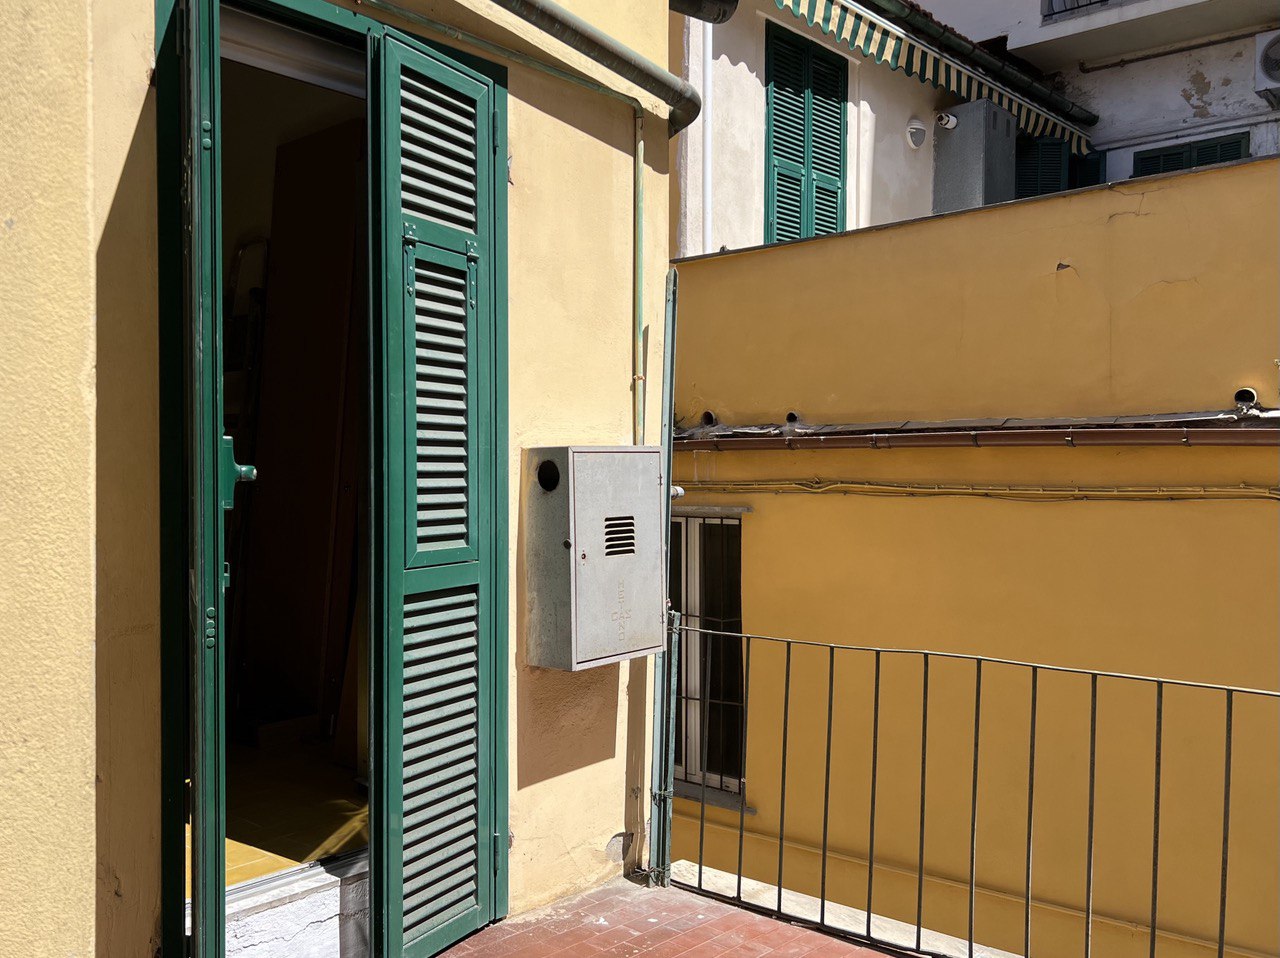 Imperia Oneglia – historic center apartment